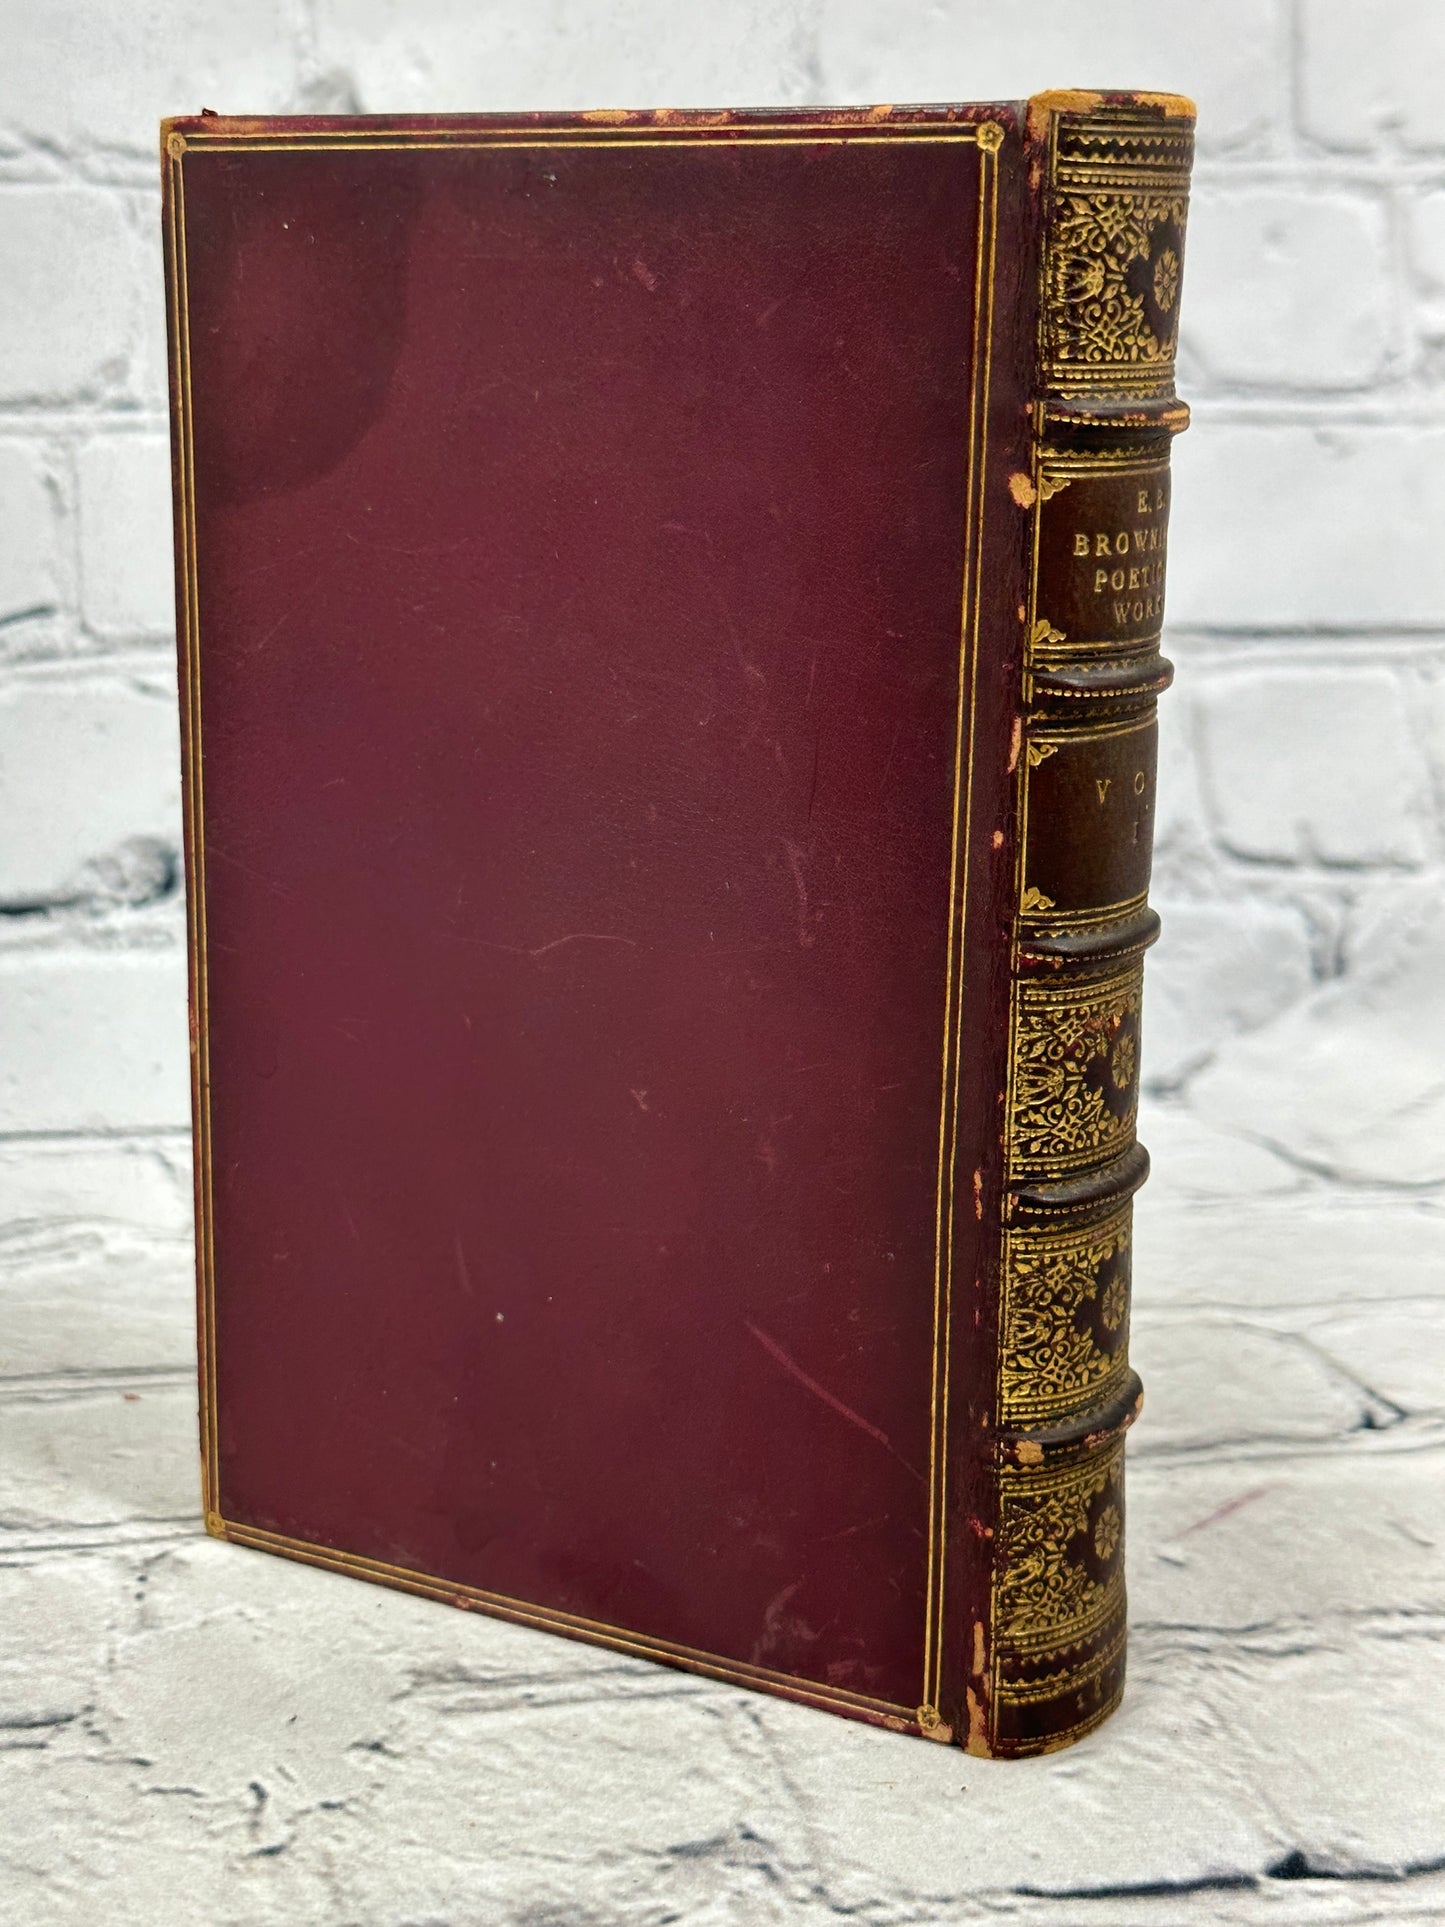 Elizabeth Barrett Browning's Poetical Works: Vol  I [1873 · 10th Edition]